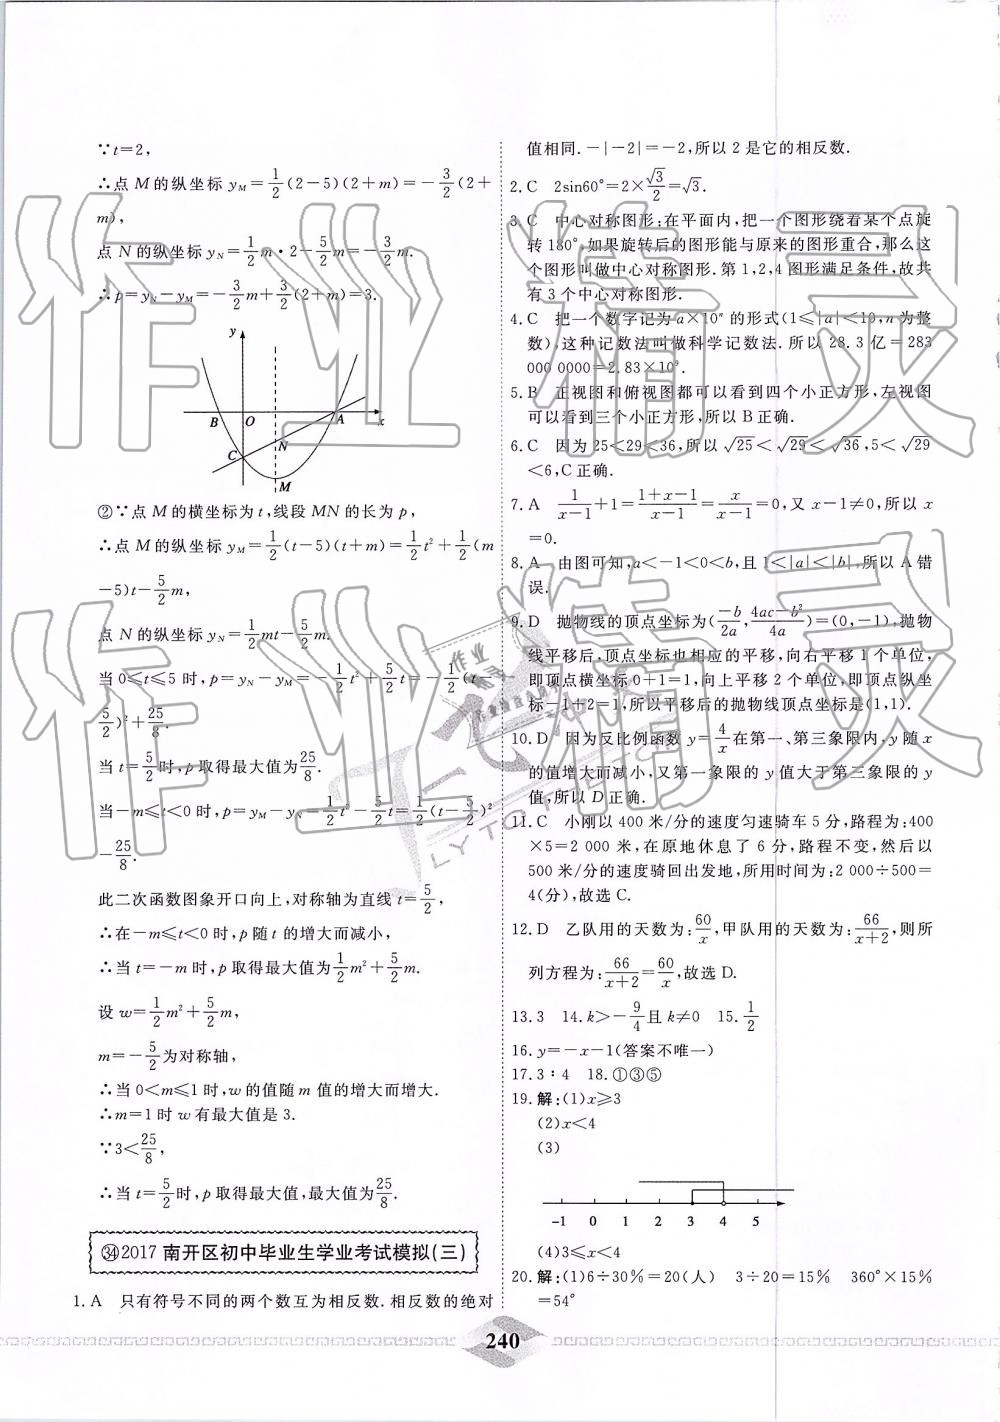 2019年一飞冲天中考模拟试题汇编数学 第80页